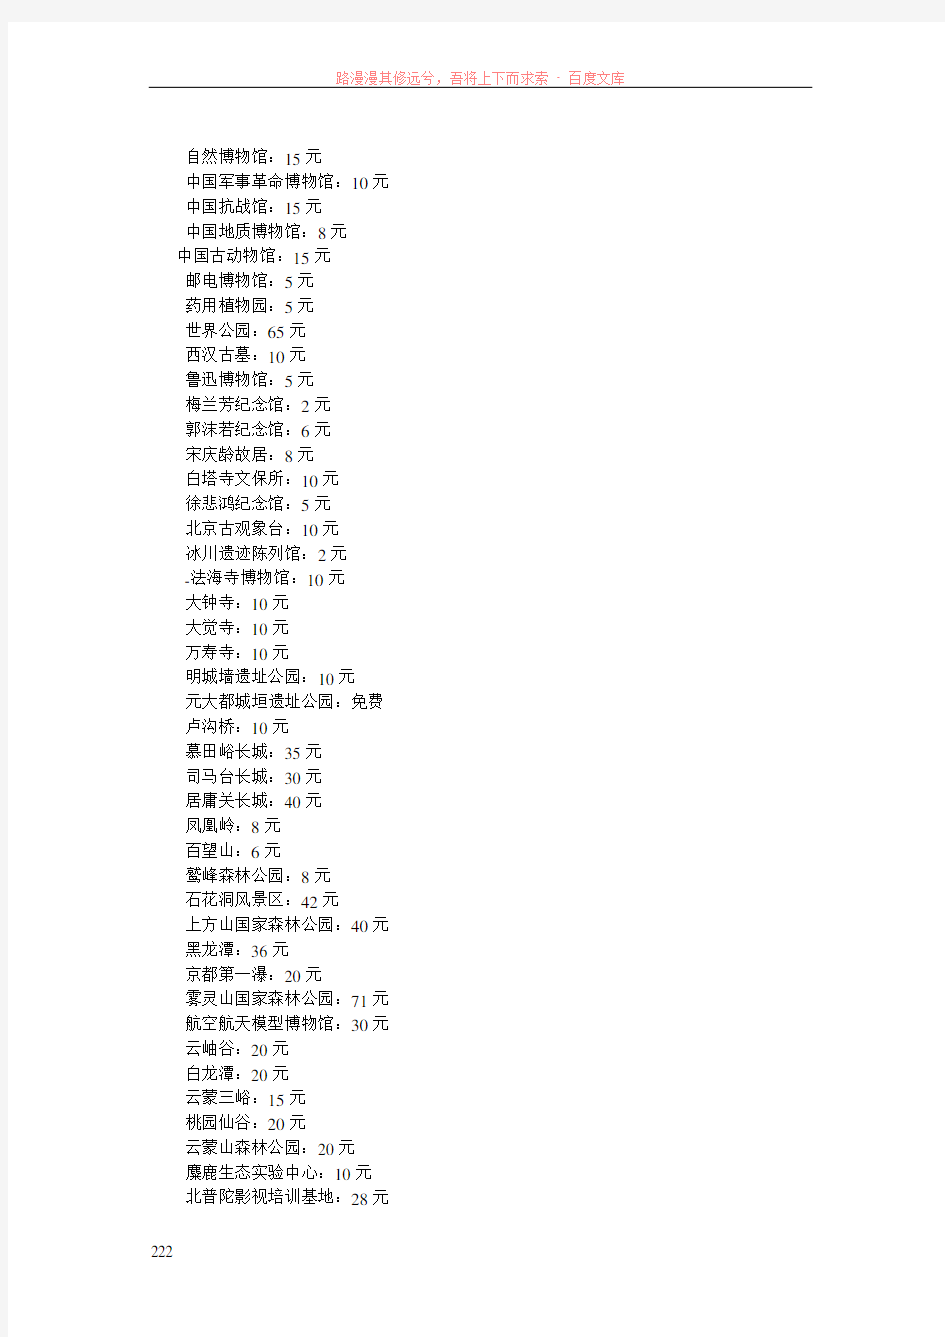 最全北京各旅游景点票价明细表